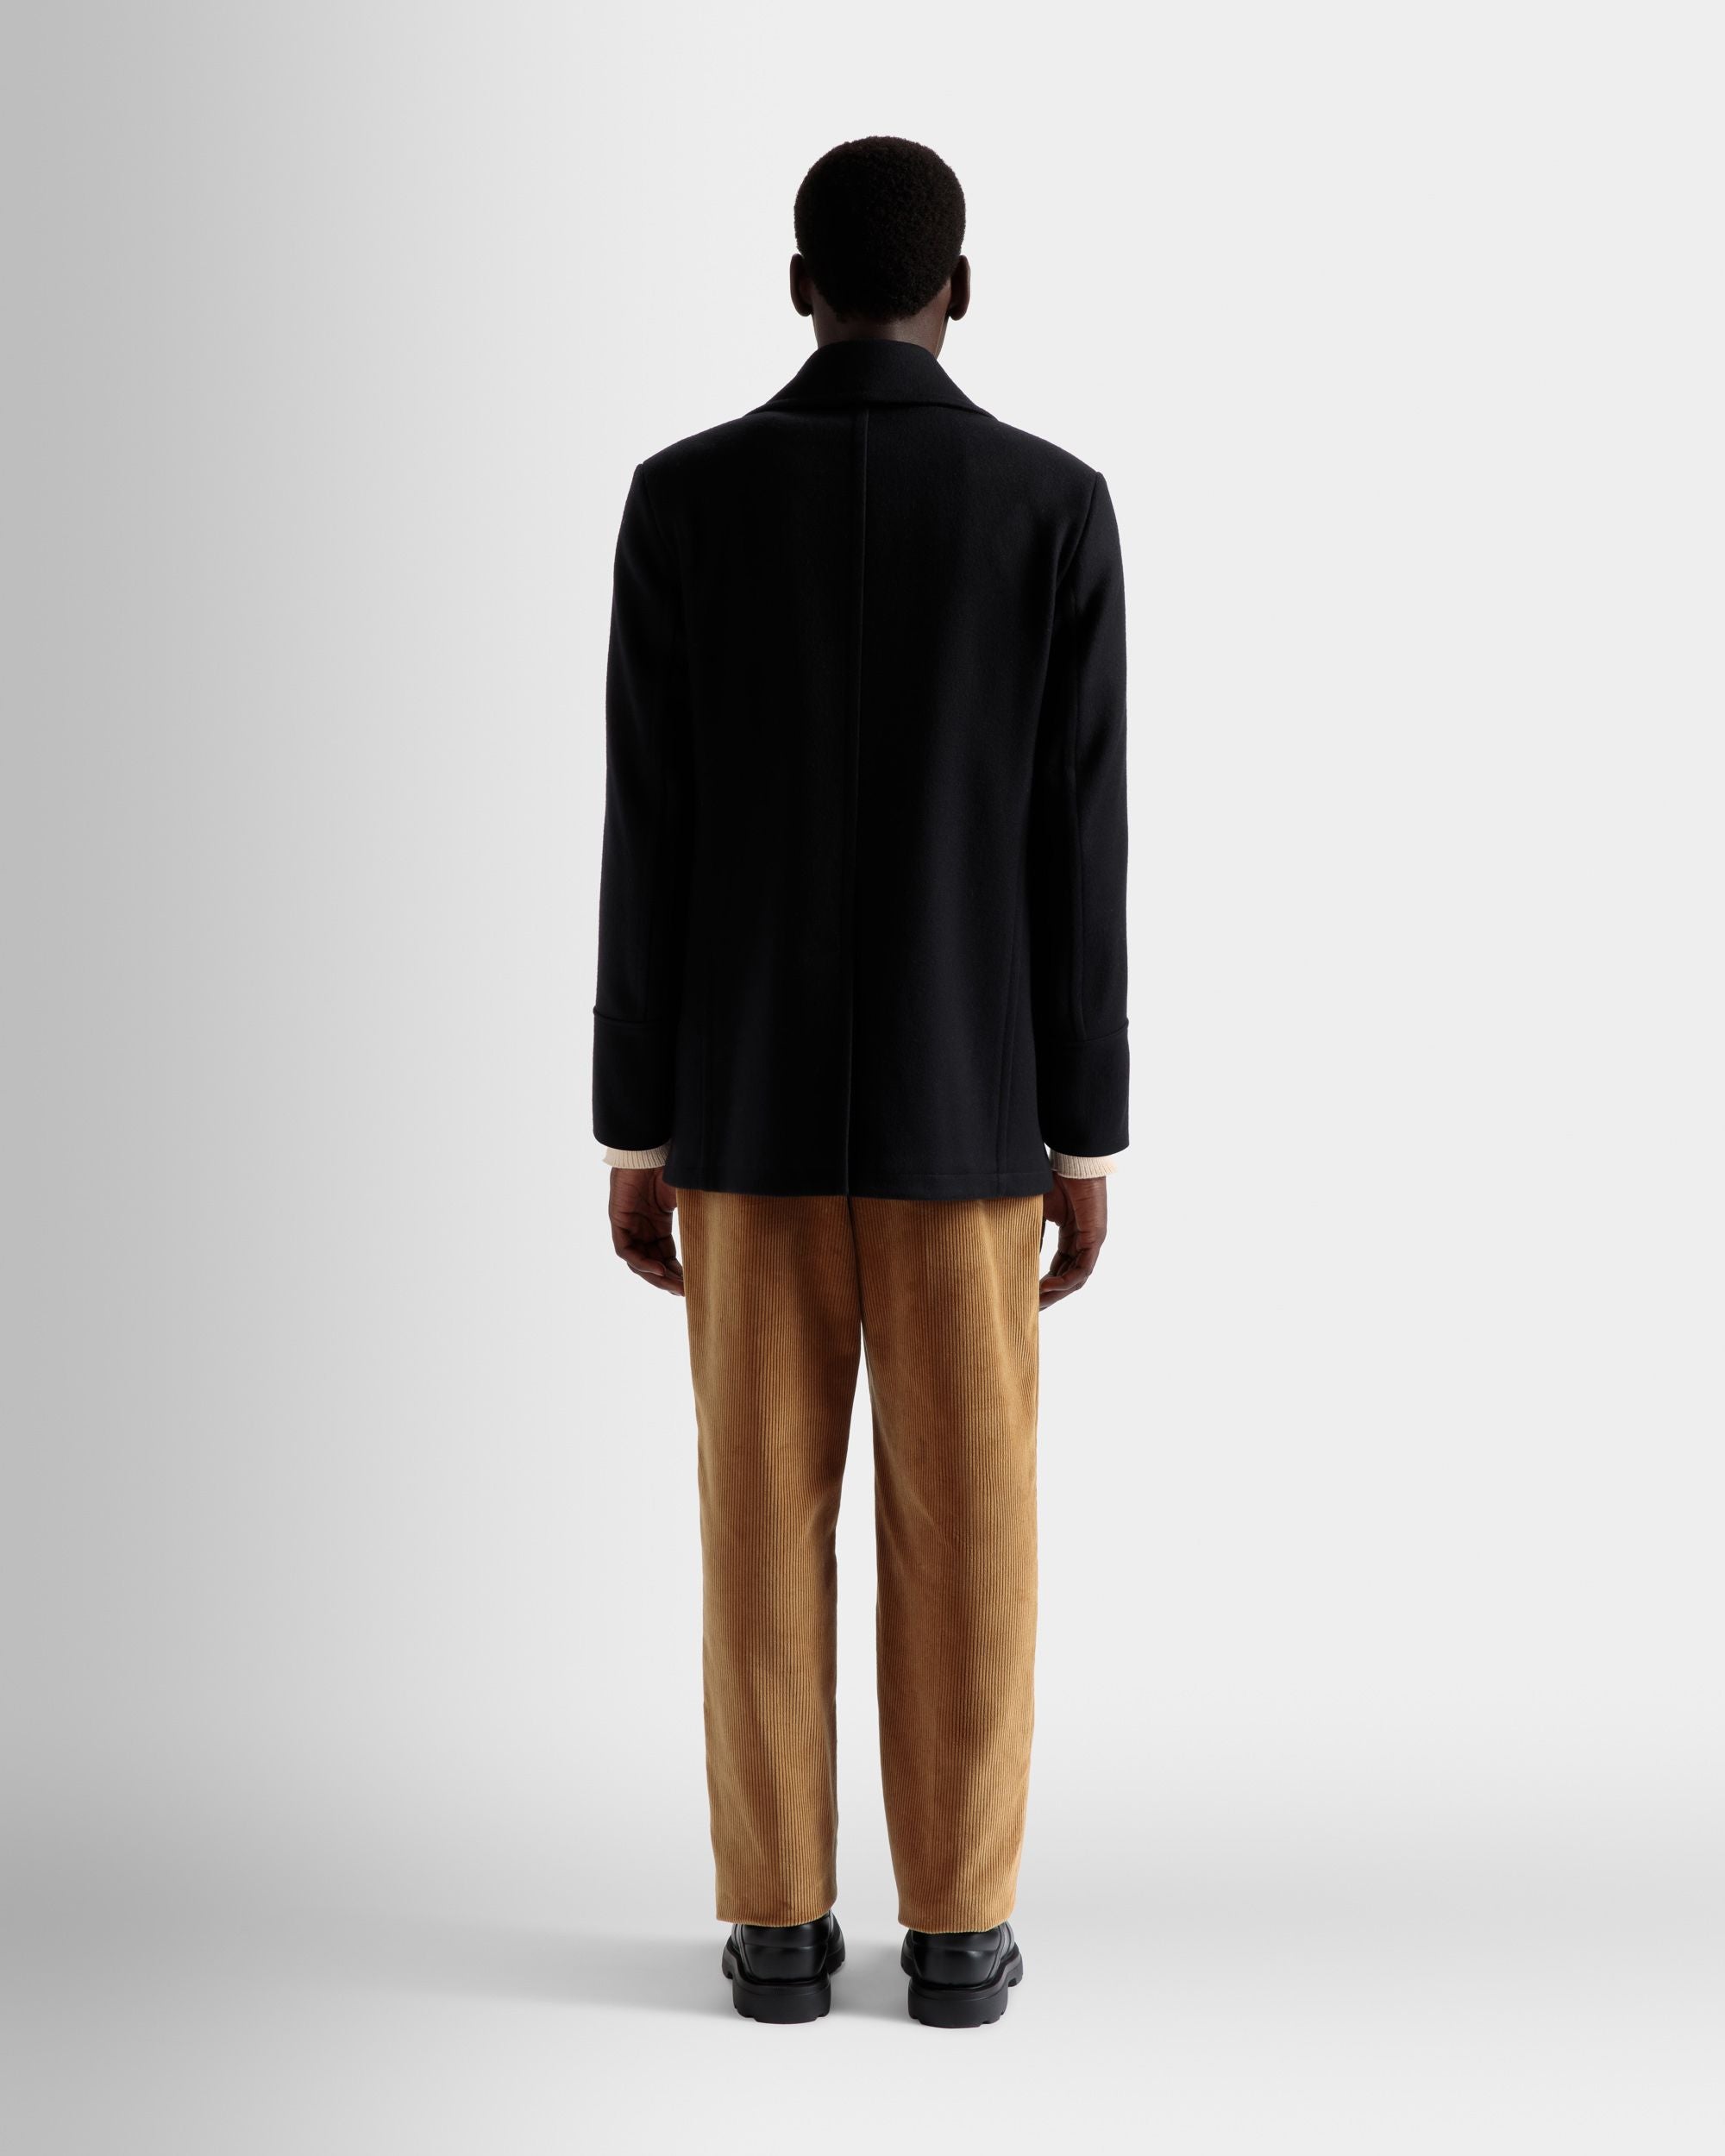 Zweireihiger Mantel | Jacken und Mäntel für Herren | Marineblaues Wollgemisch | Bally | Model getragen Rückseite